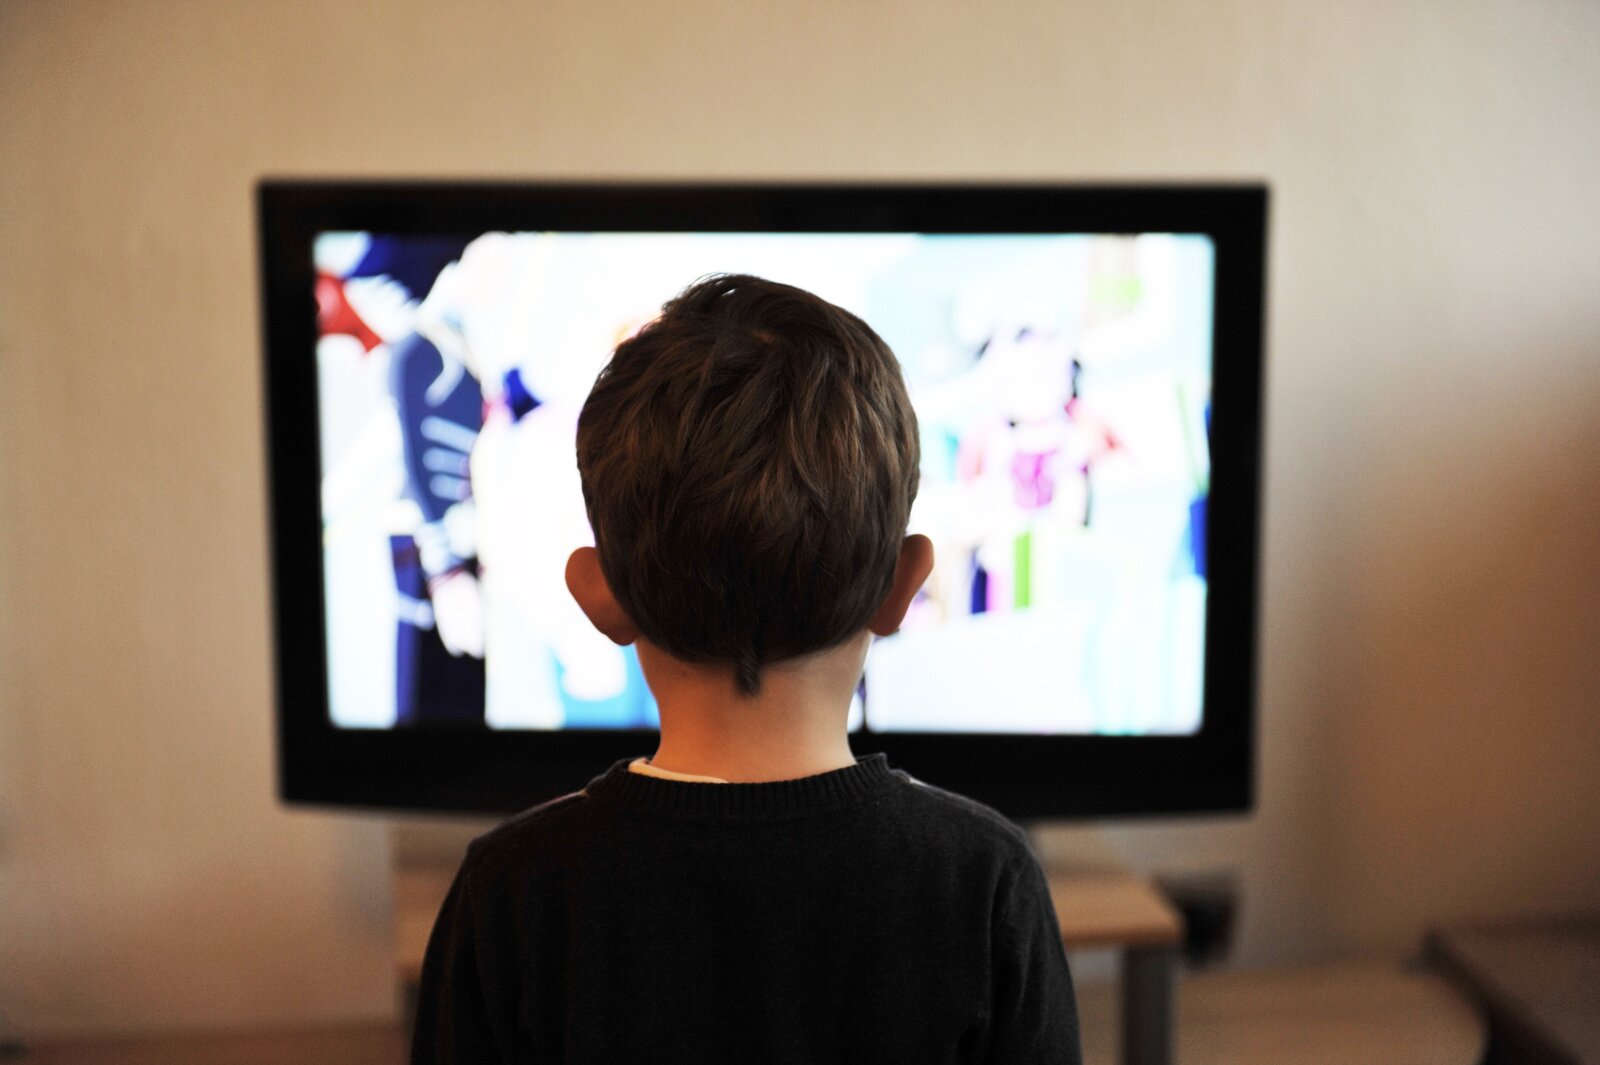 Fotografia przedstawia chłopca, który siedzi tyłem przed ekranem włączonego telewizora. Ma krótkie włosy i ciemną bluzkę. Na ekranie wyświetla się rozmyty jasny obraz. Telewizor stoi na tle białej ściany.